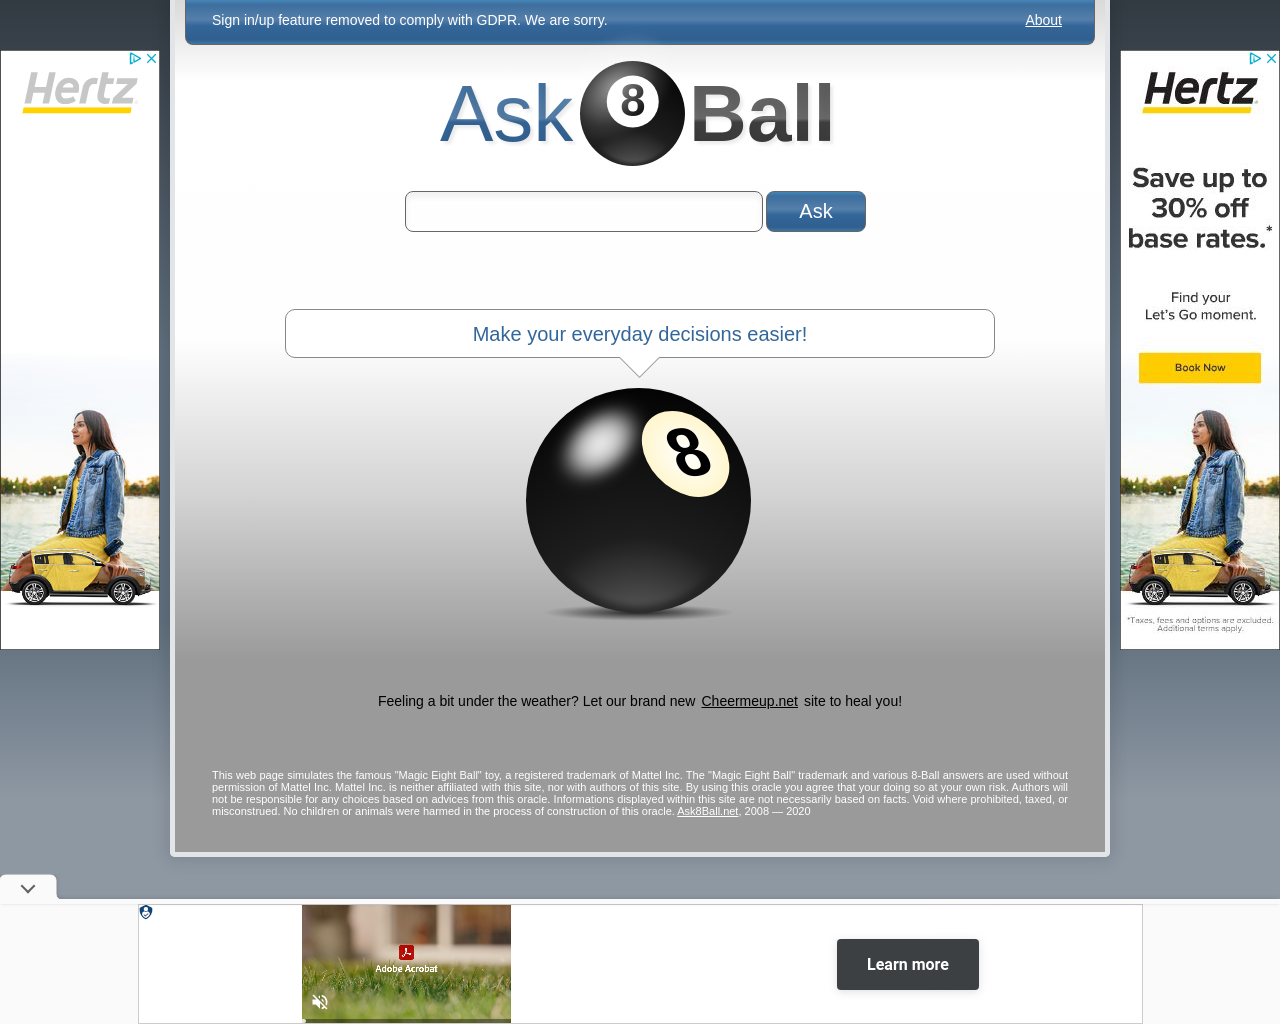 ask8ball.net